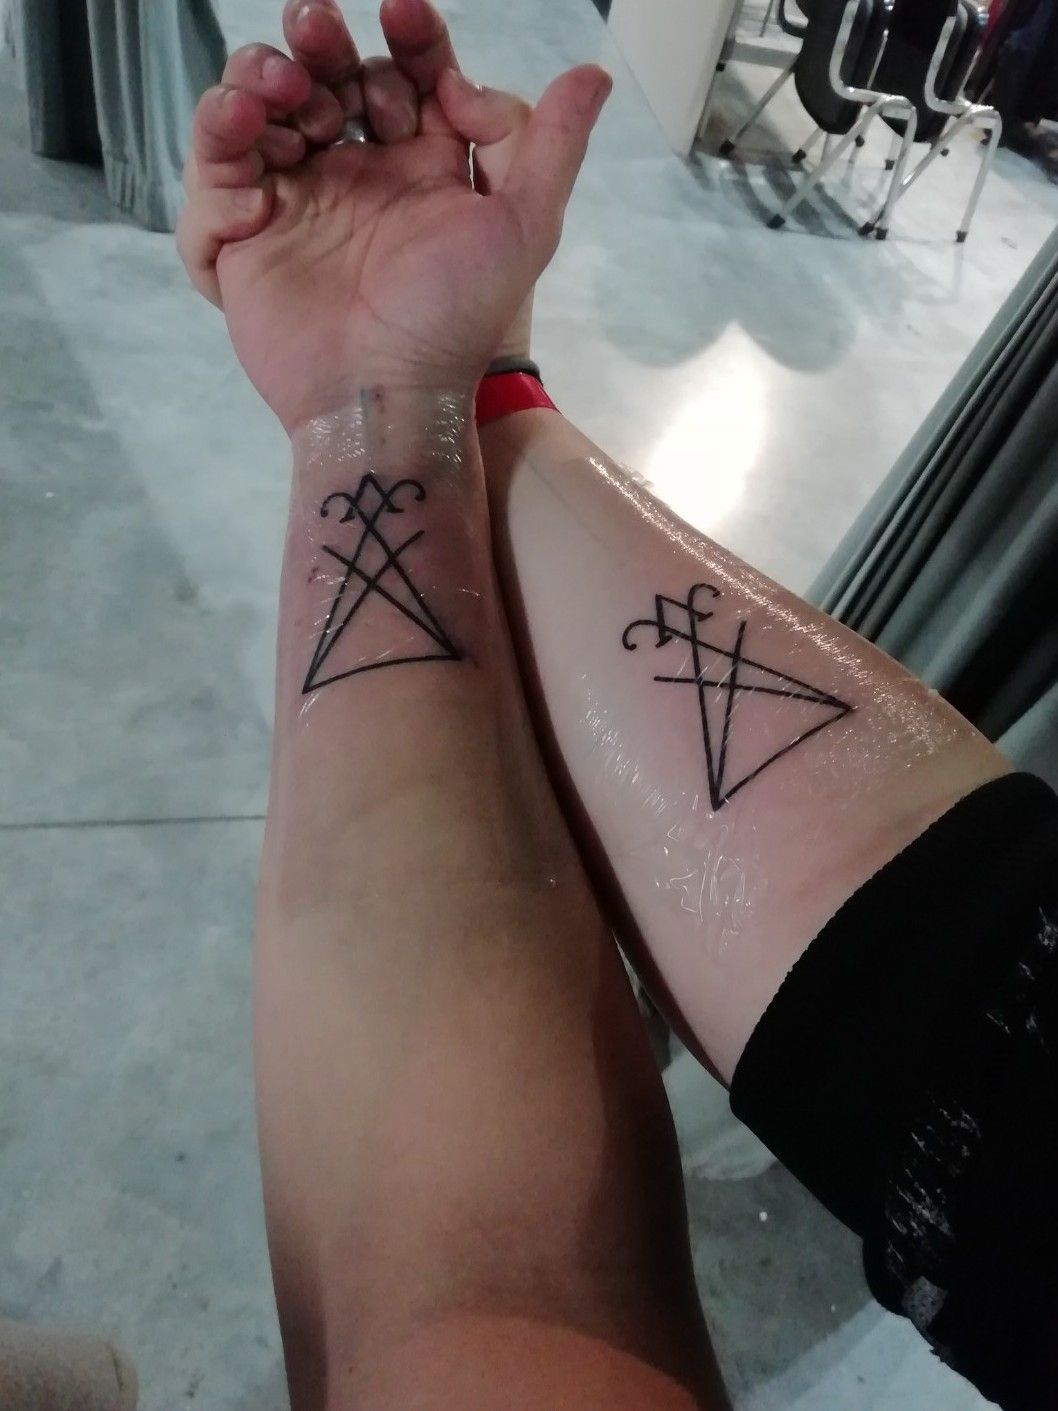 Lucifer symbols  Occult tattoo Sigil tattoo Norse tattoo